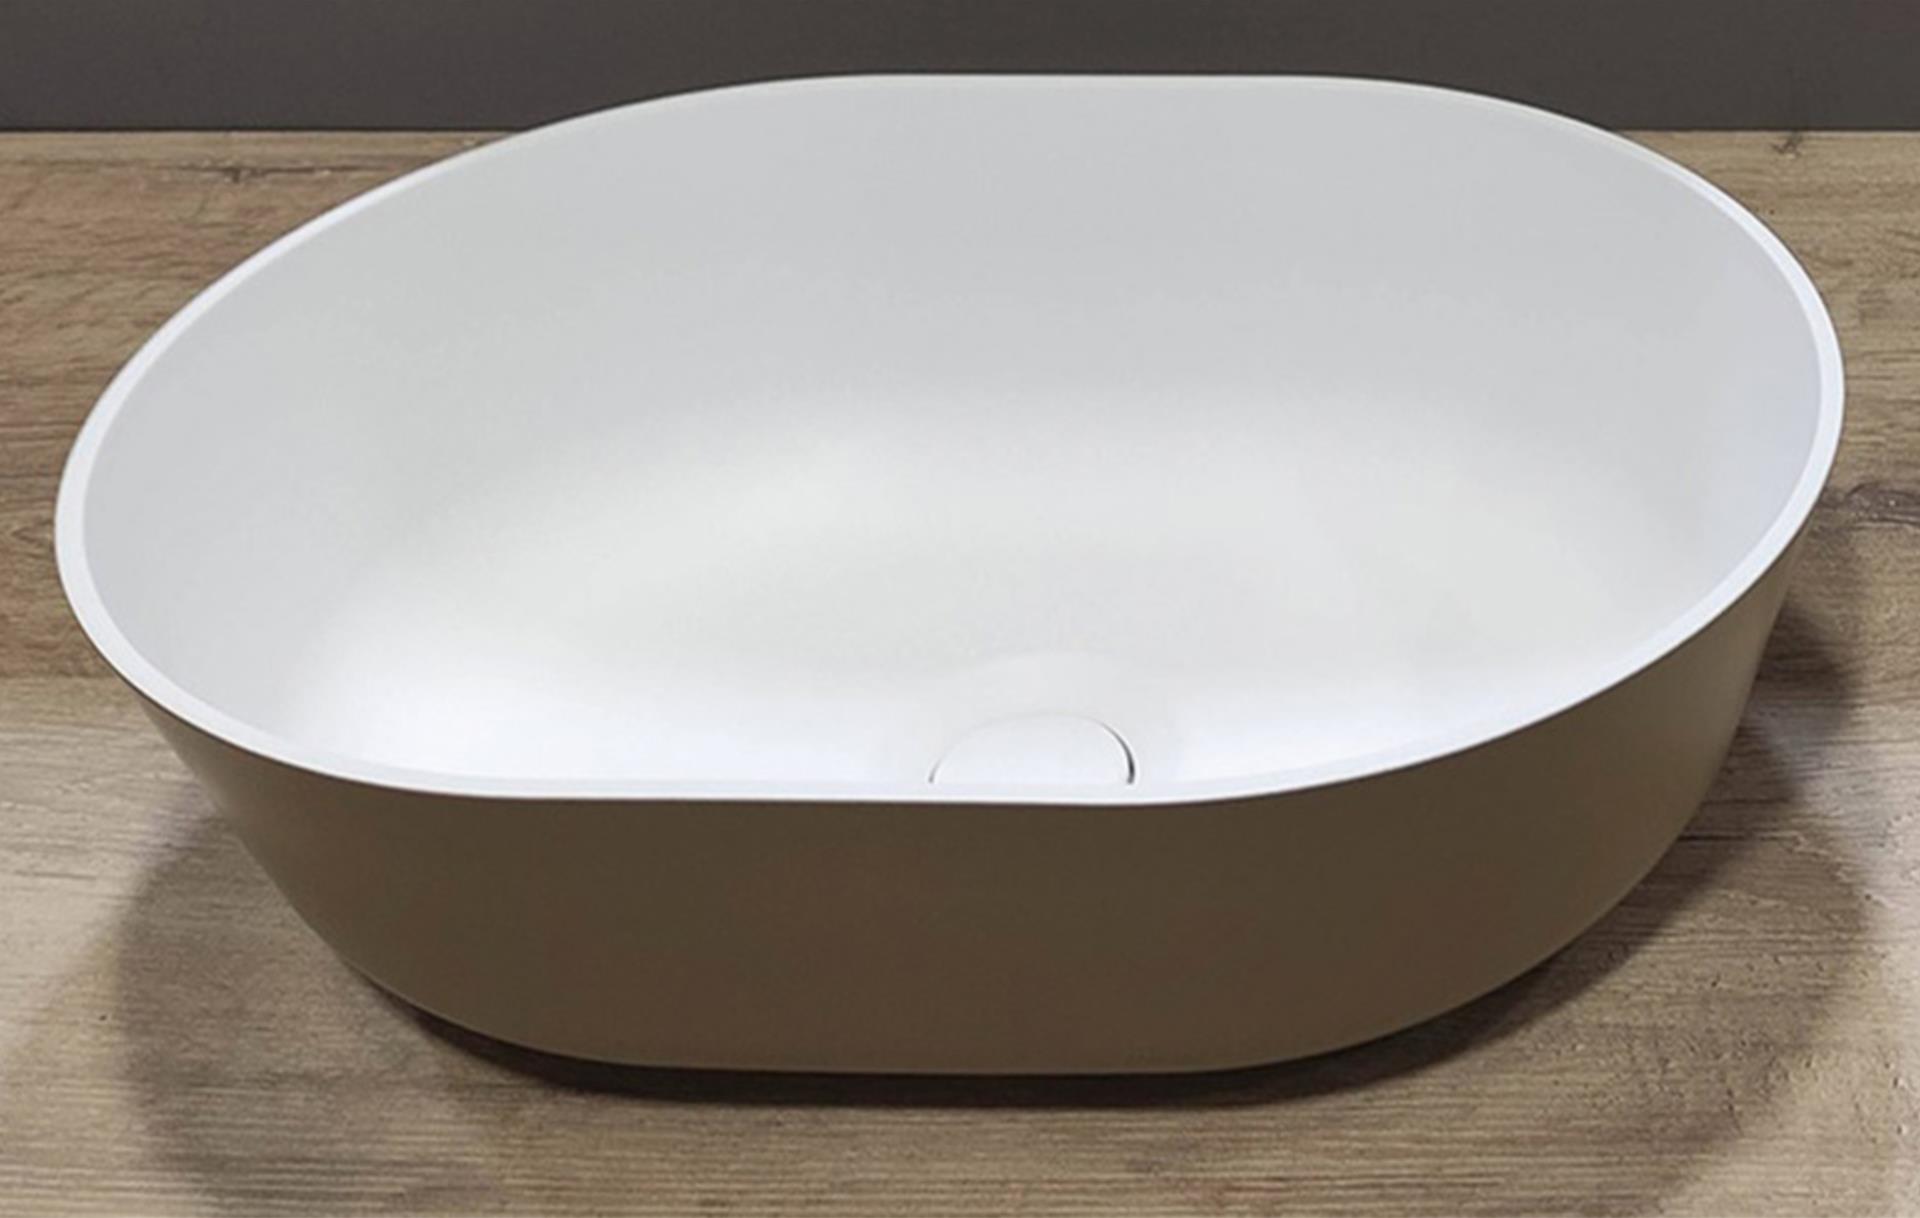 Aufsetzbares Waschbecken beige, oval 350 x 260 mm